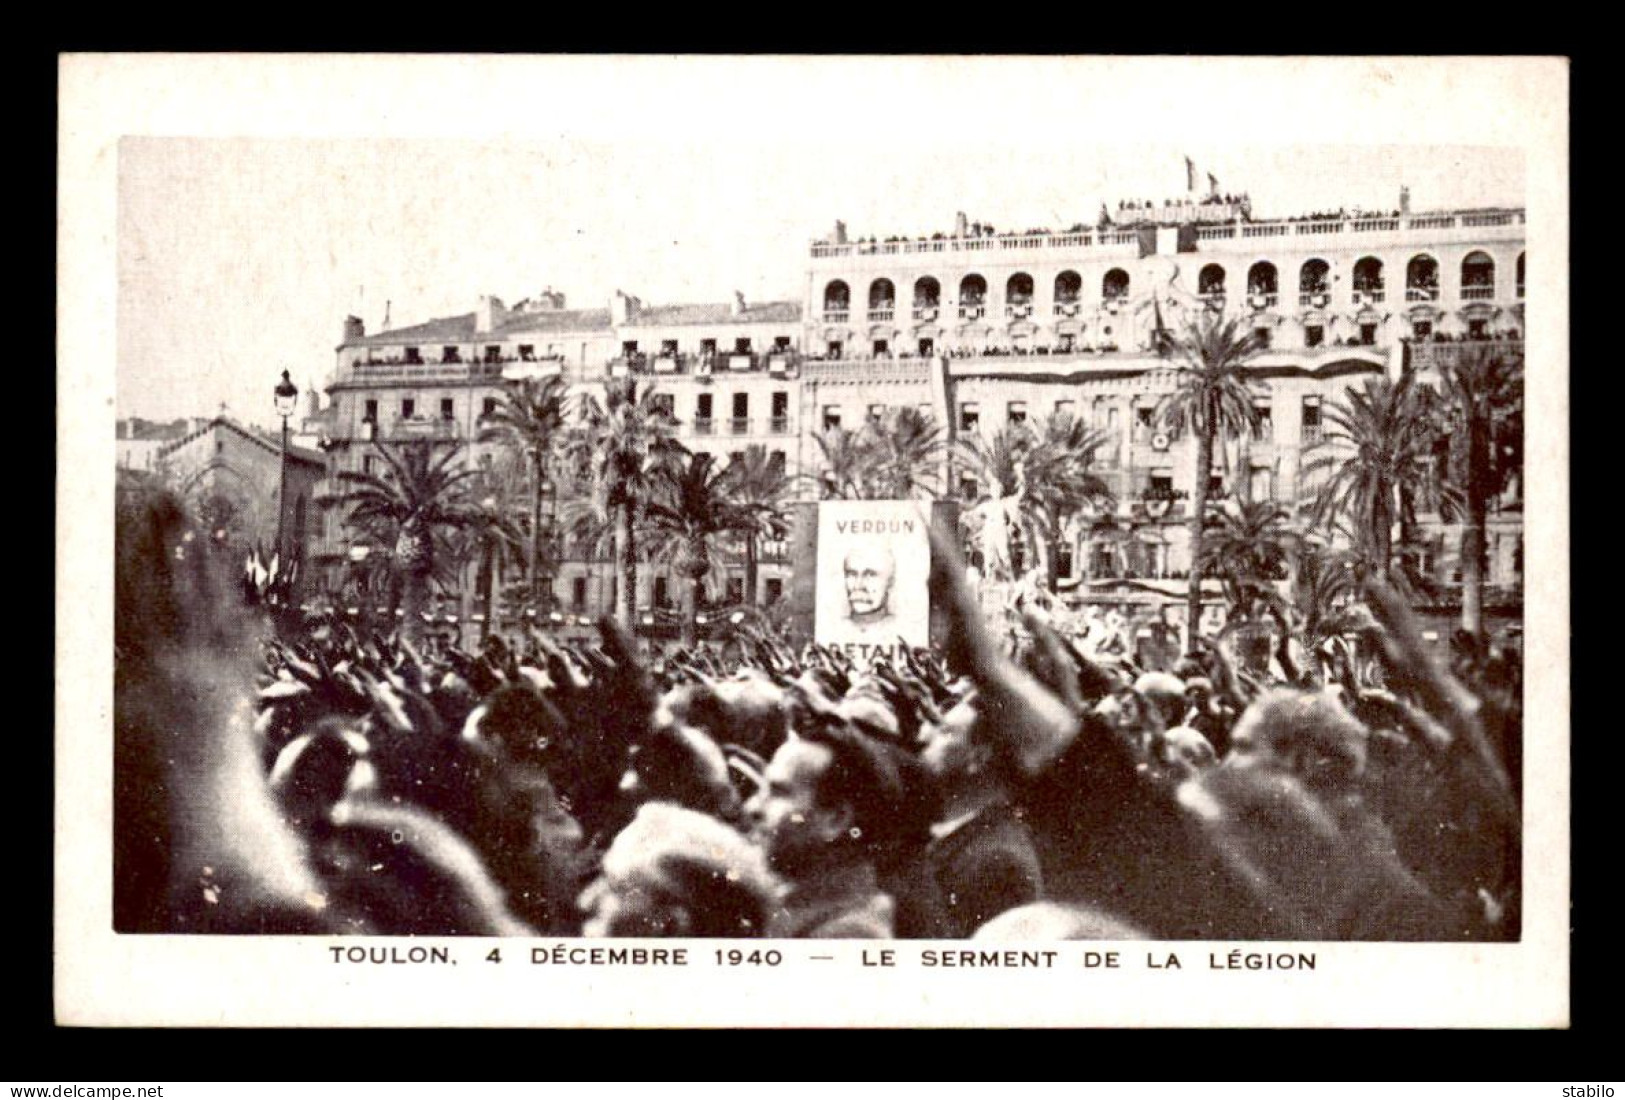 GUERRE 39/45 - TOULON (VAR) - LE 4 DECEMBRE 1940, VISITE DU MARECHAL PETAIN - LE SERMENT DE LA LEGION - Weltkrieg 1939-45